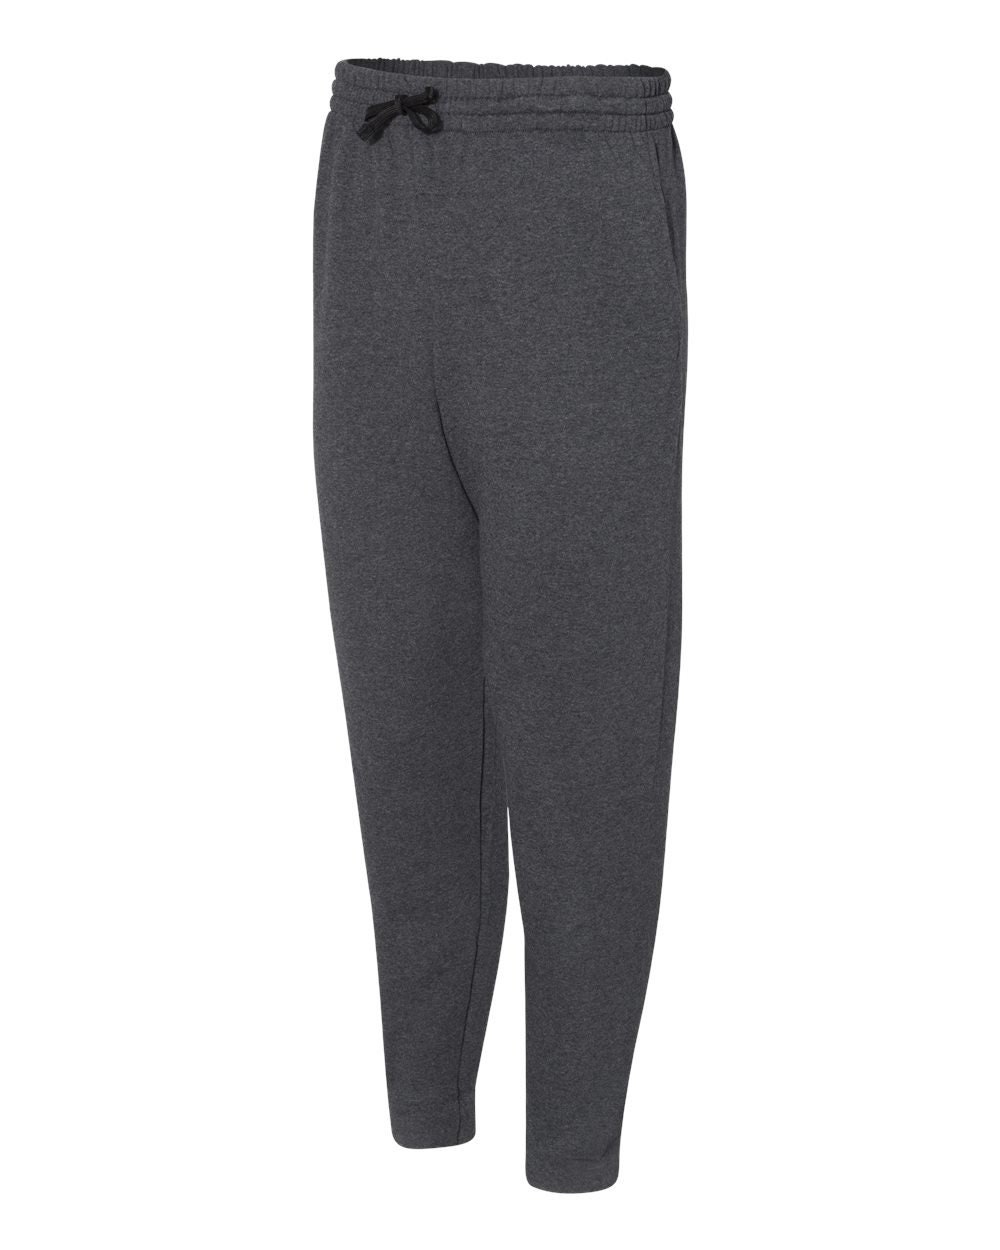 Monogrammed Ladies Sweatpants Lounge Pants | Etsy